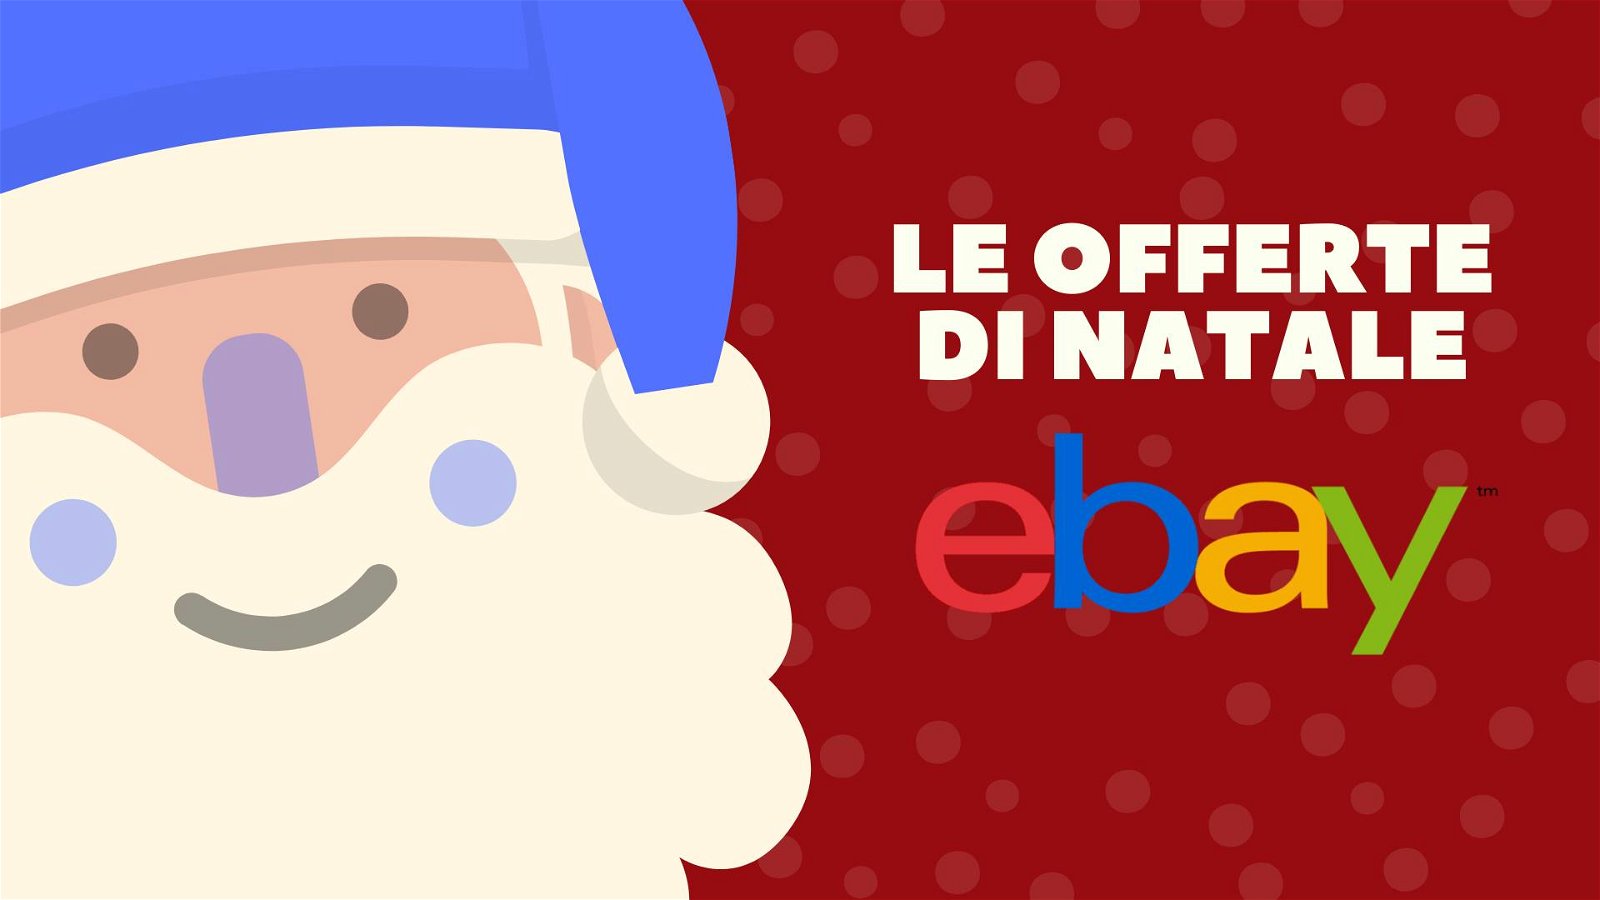 Immagine di Le offerte di Natale di eBay: AirPods 2 a 129 euro e Xiaomi Mi 9T a 279 euro